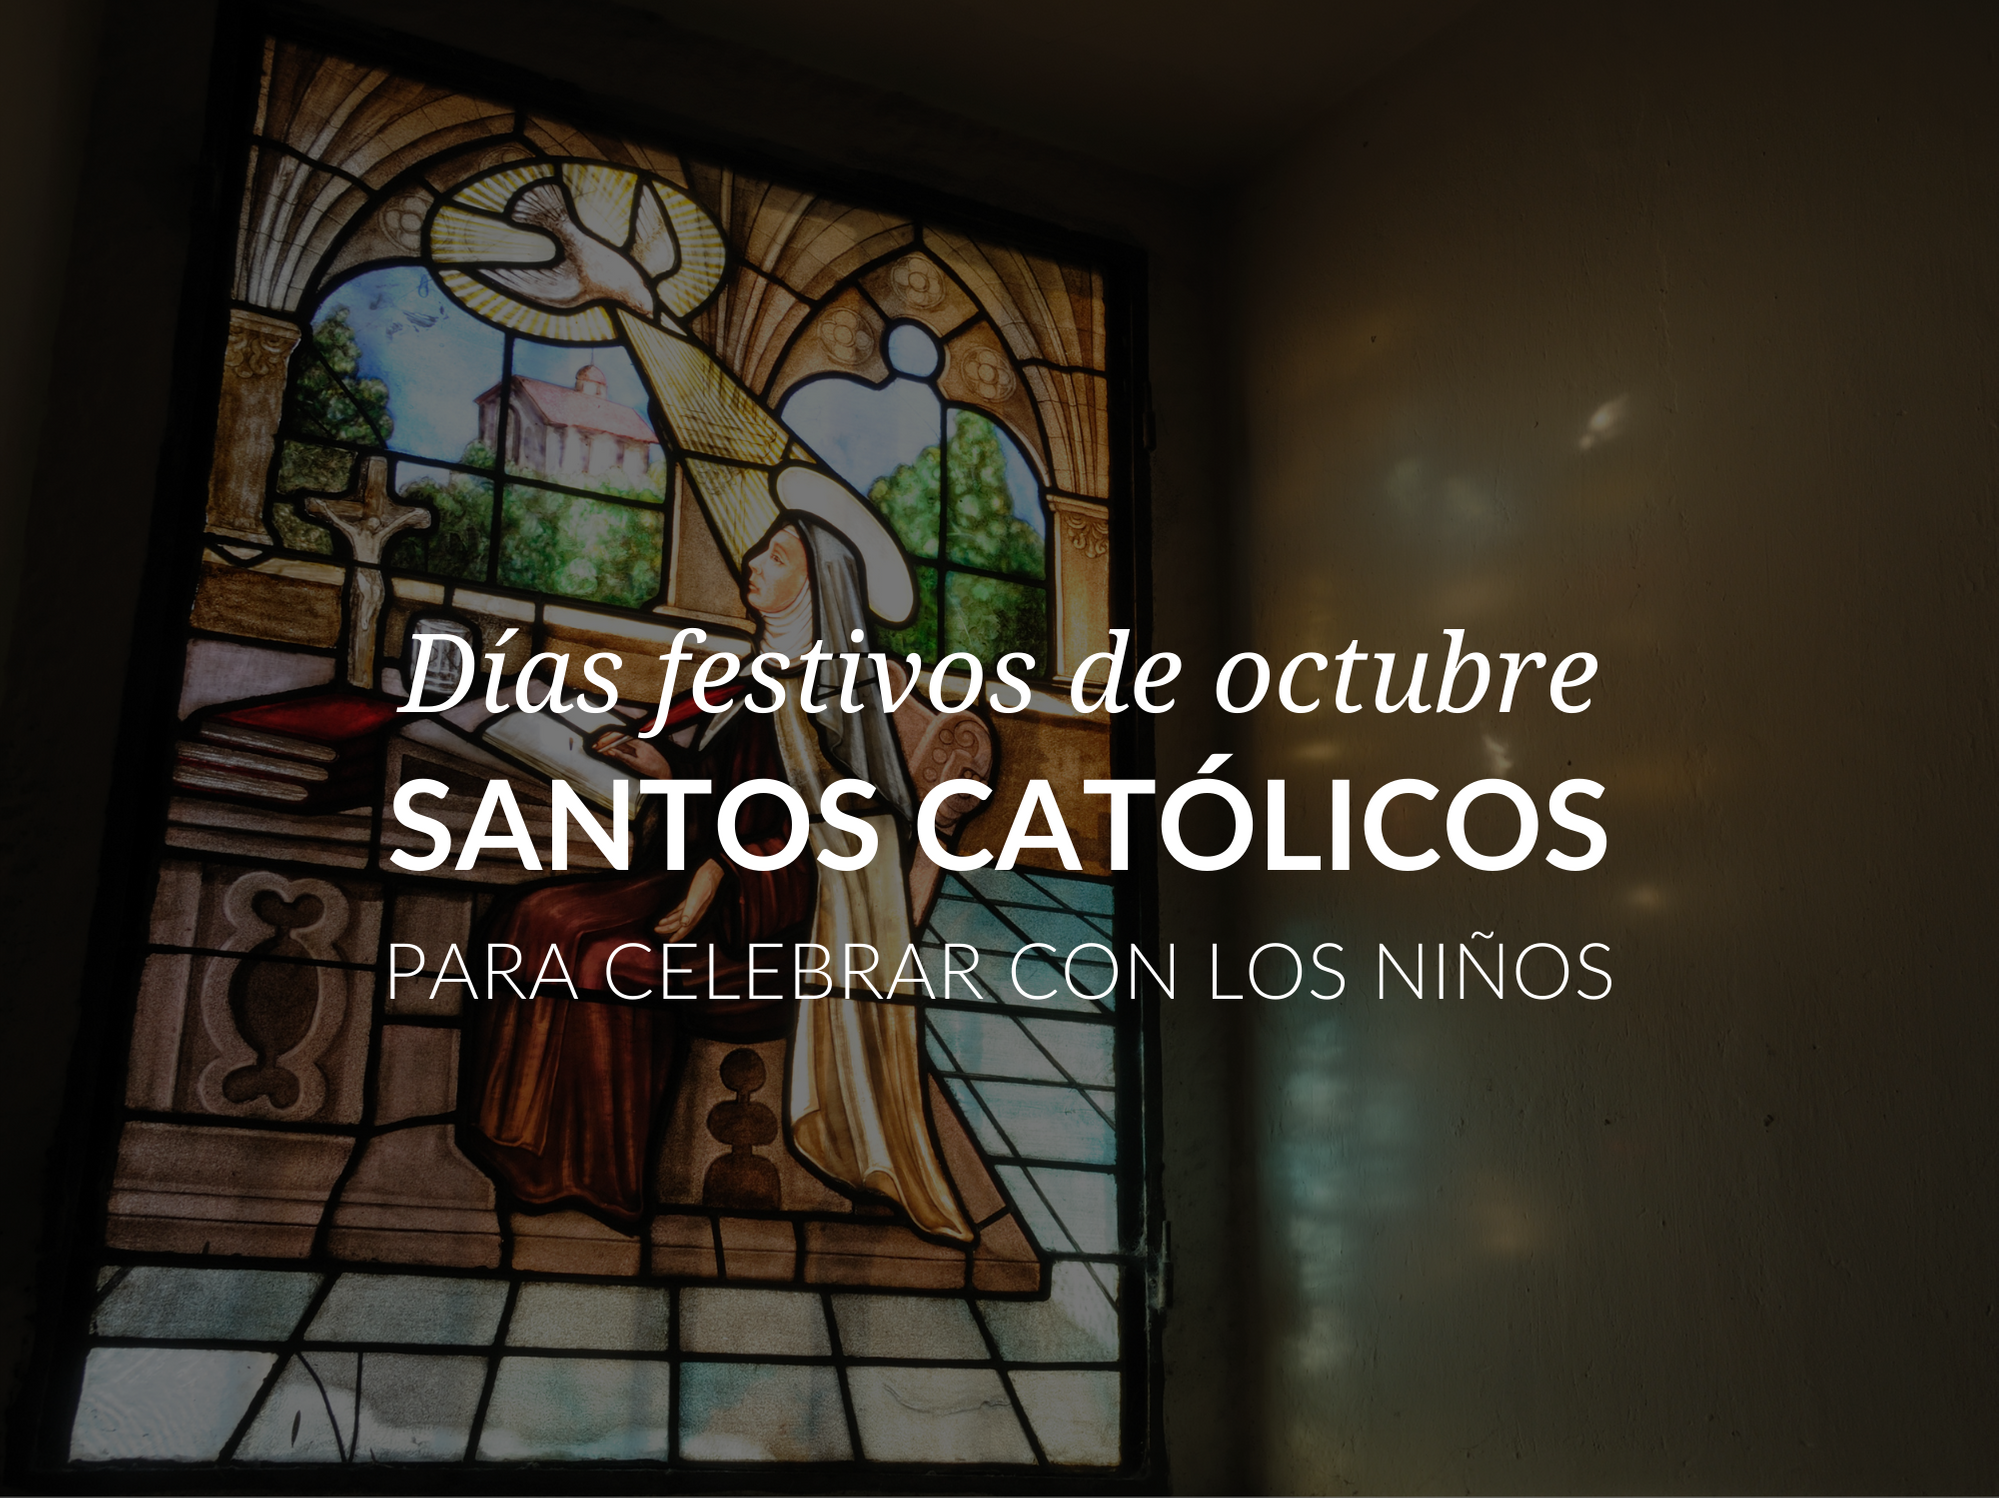 Dias festivos de octubre: santos catolicos para celebrar con los ninos